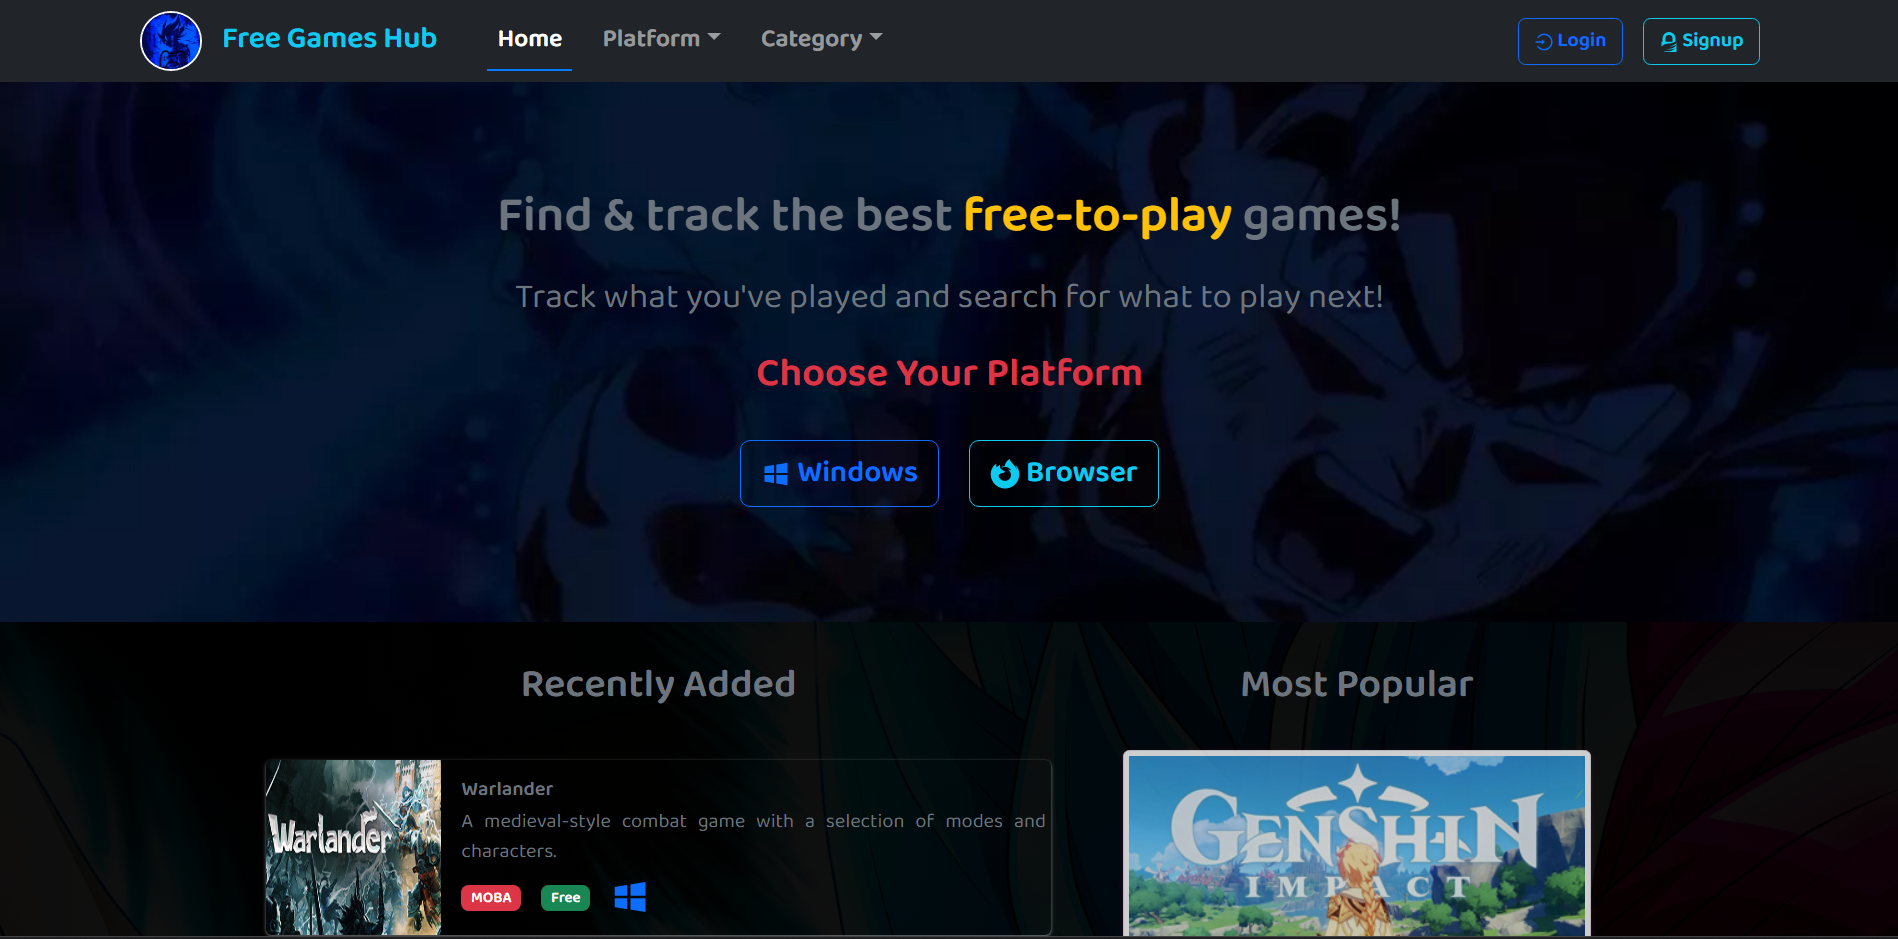 Free Games Hub